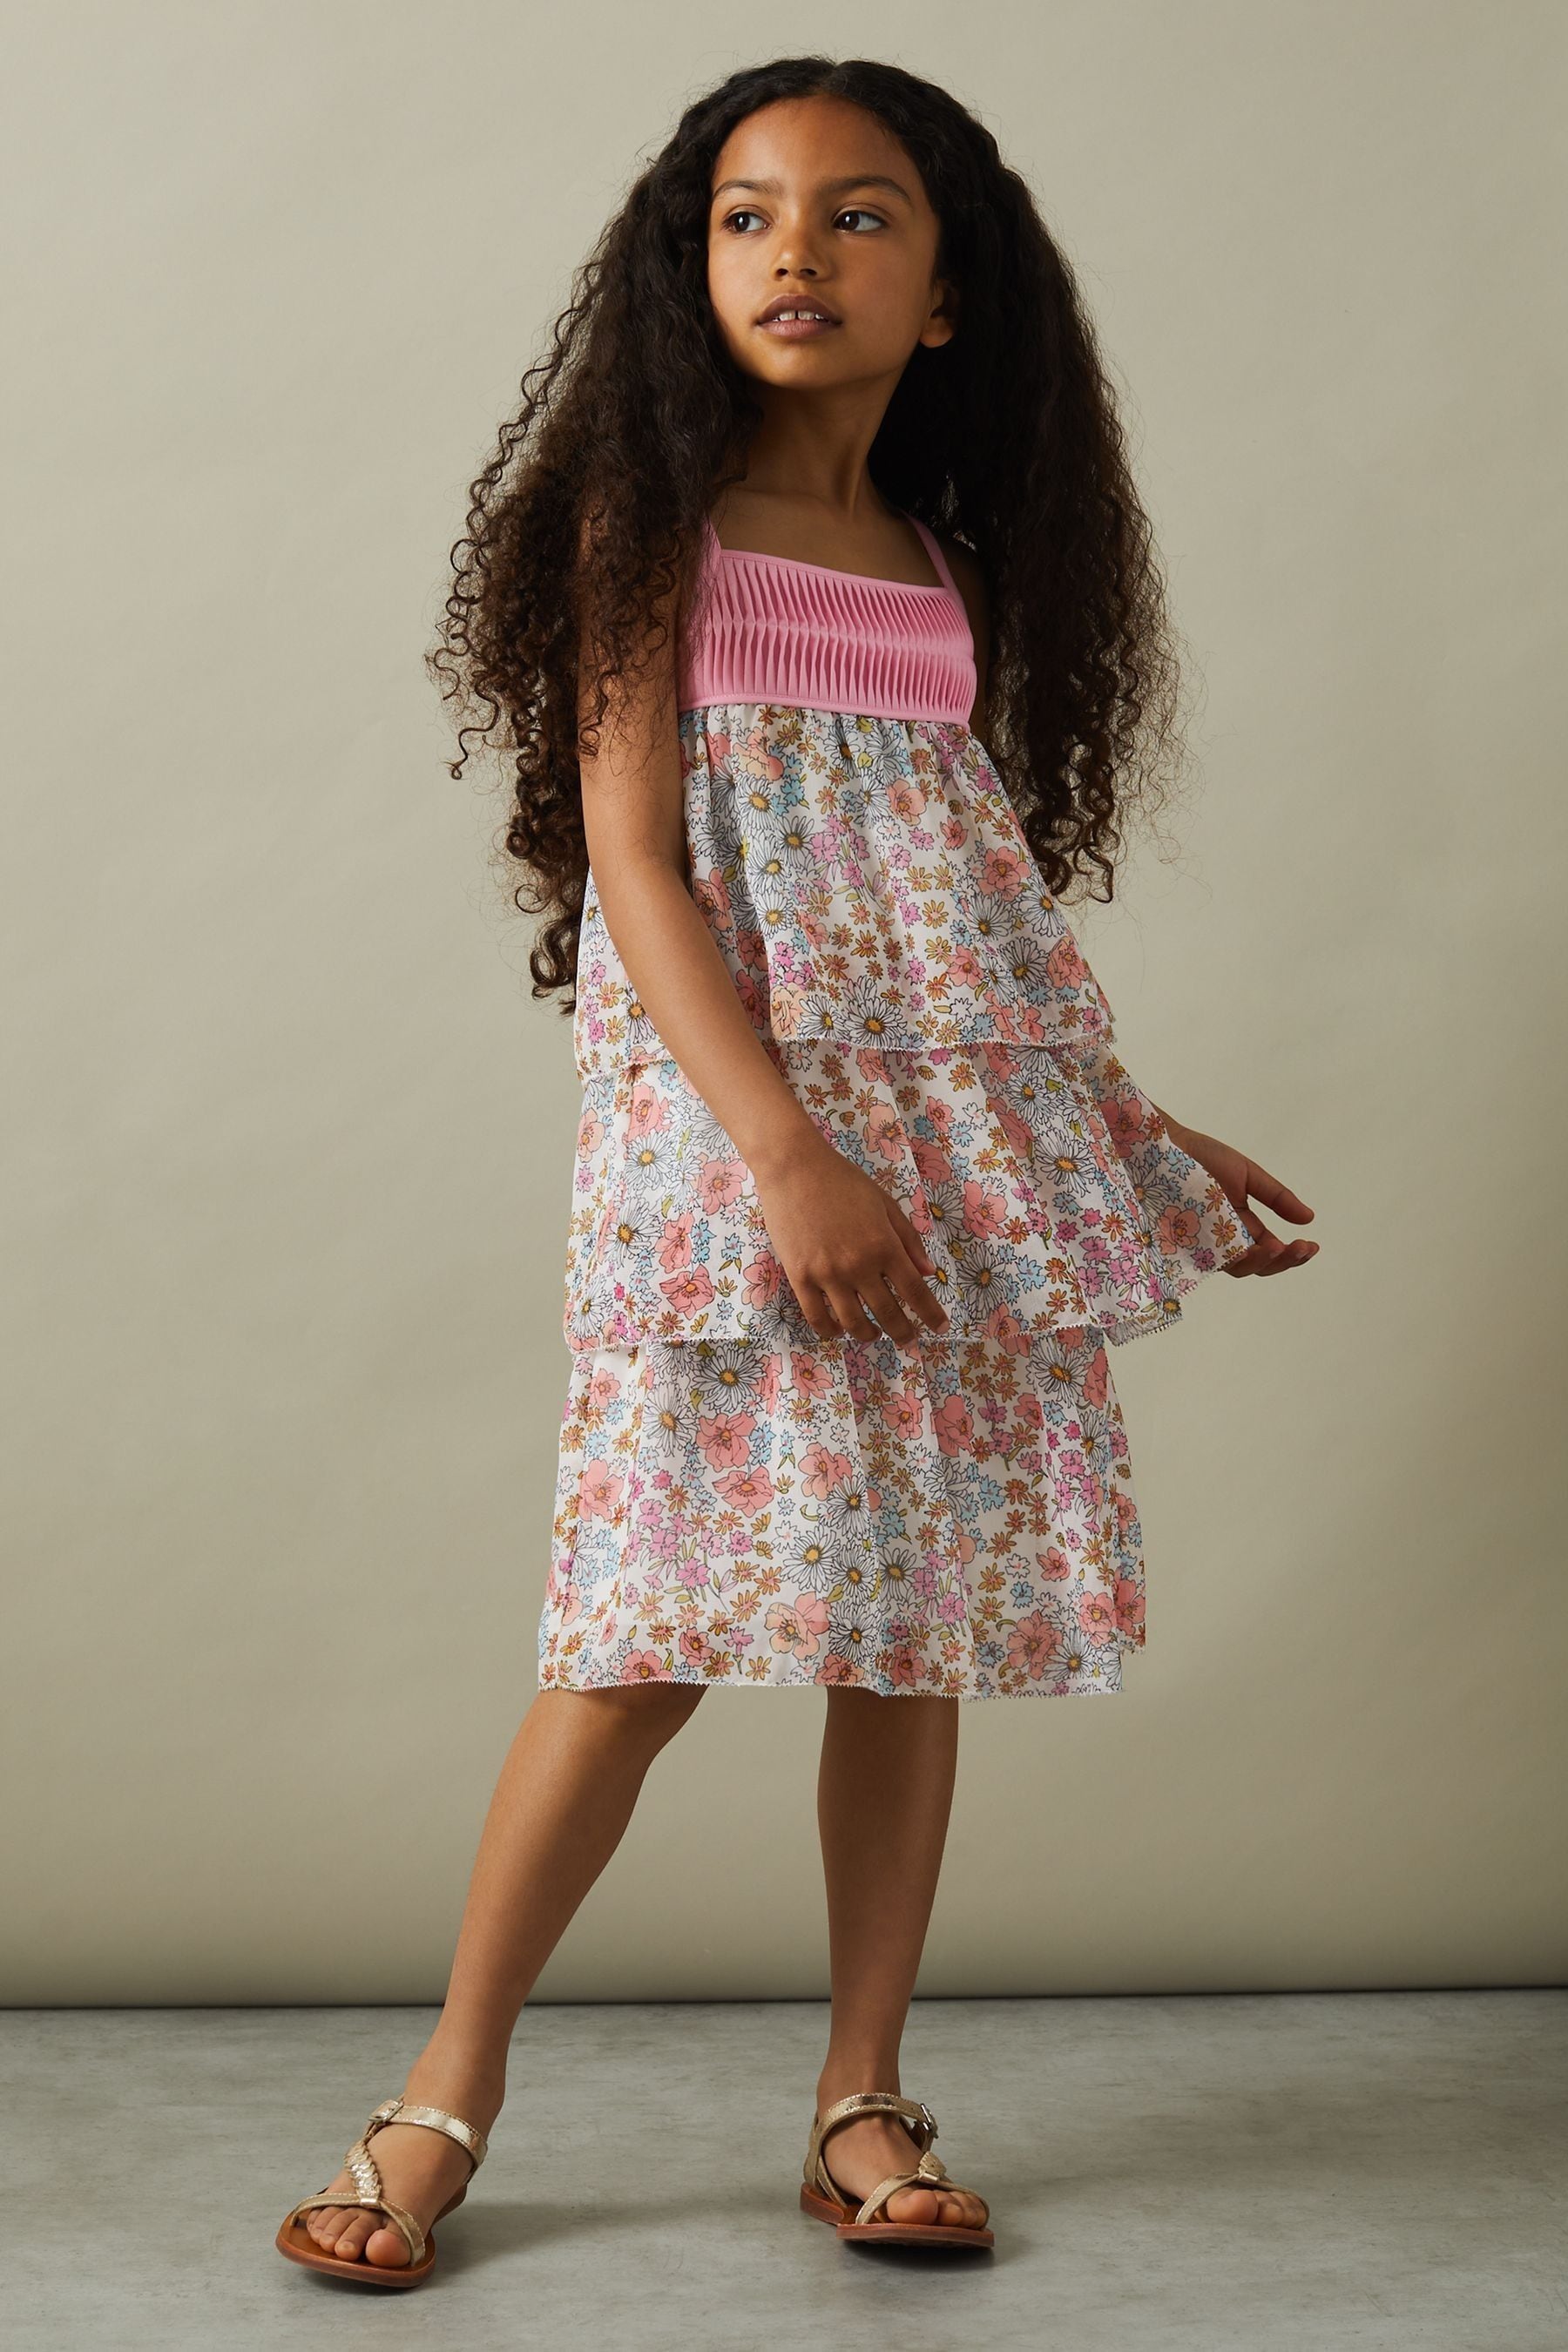 Reiss Kids' Leela - Pink Print Junior Floral Print Tiered Dress, Age 4-5 Years